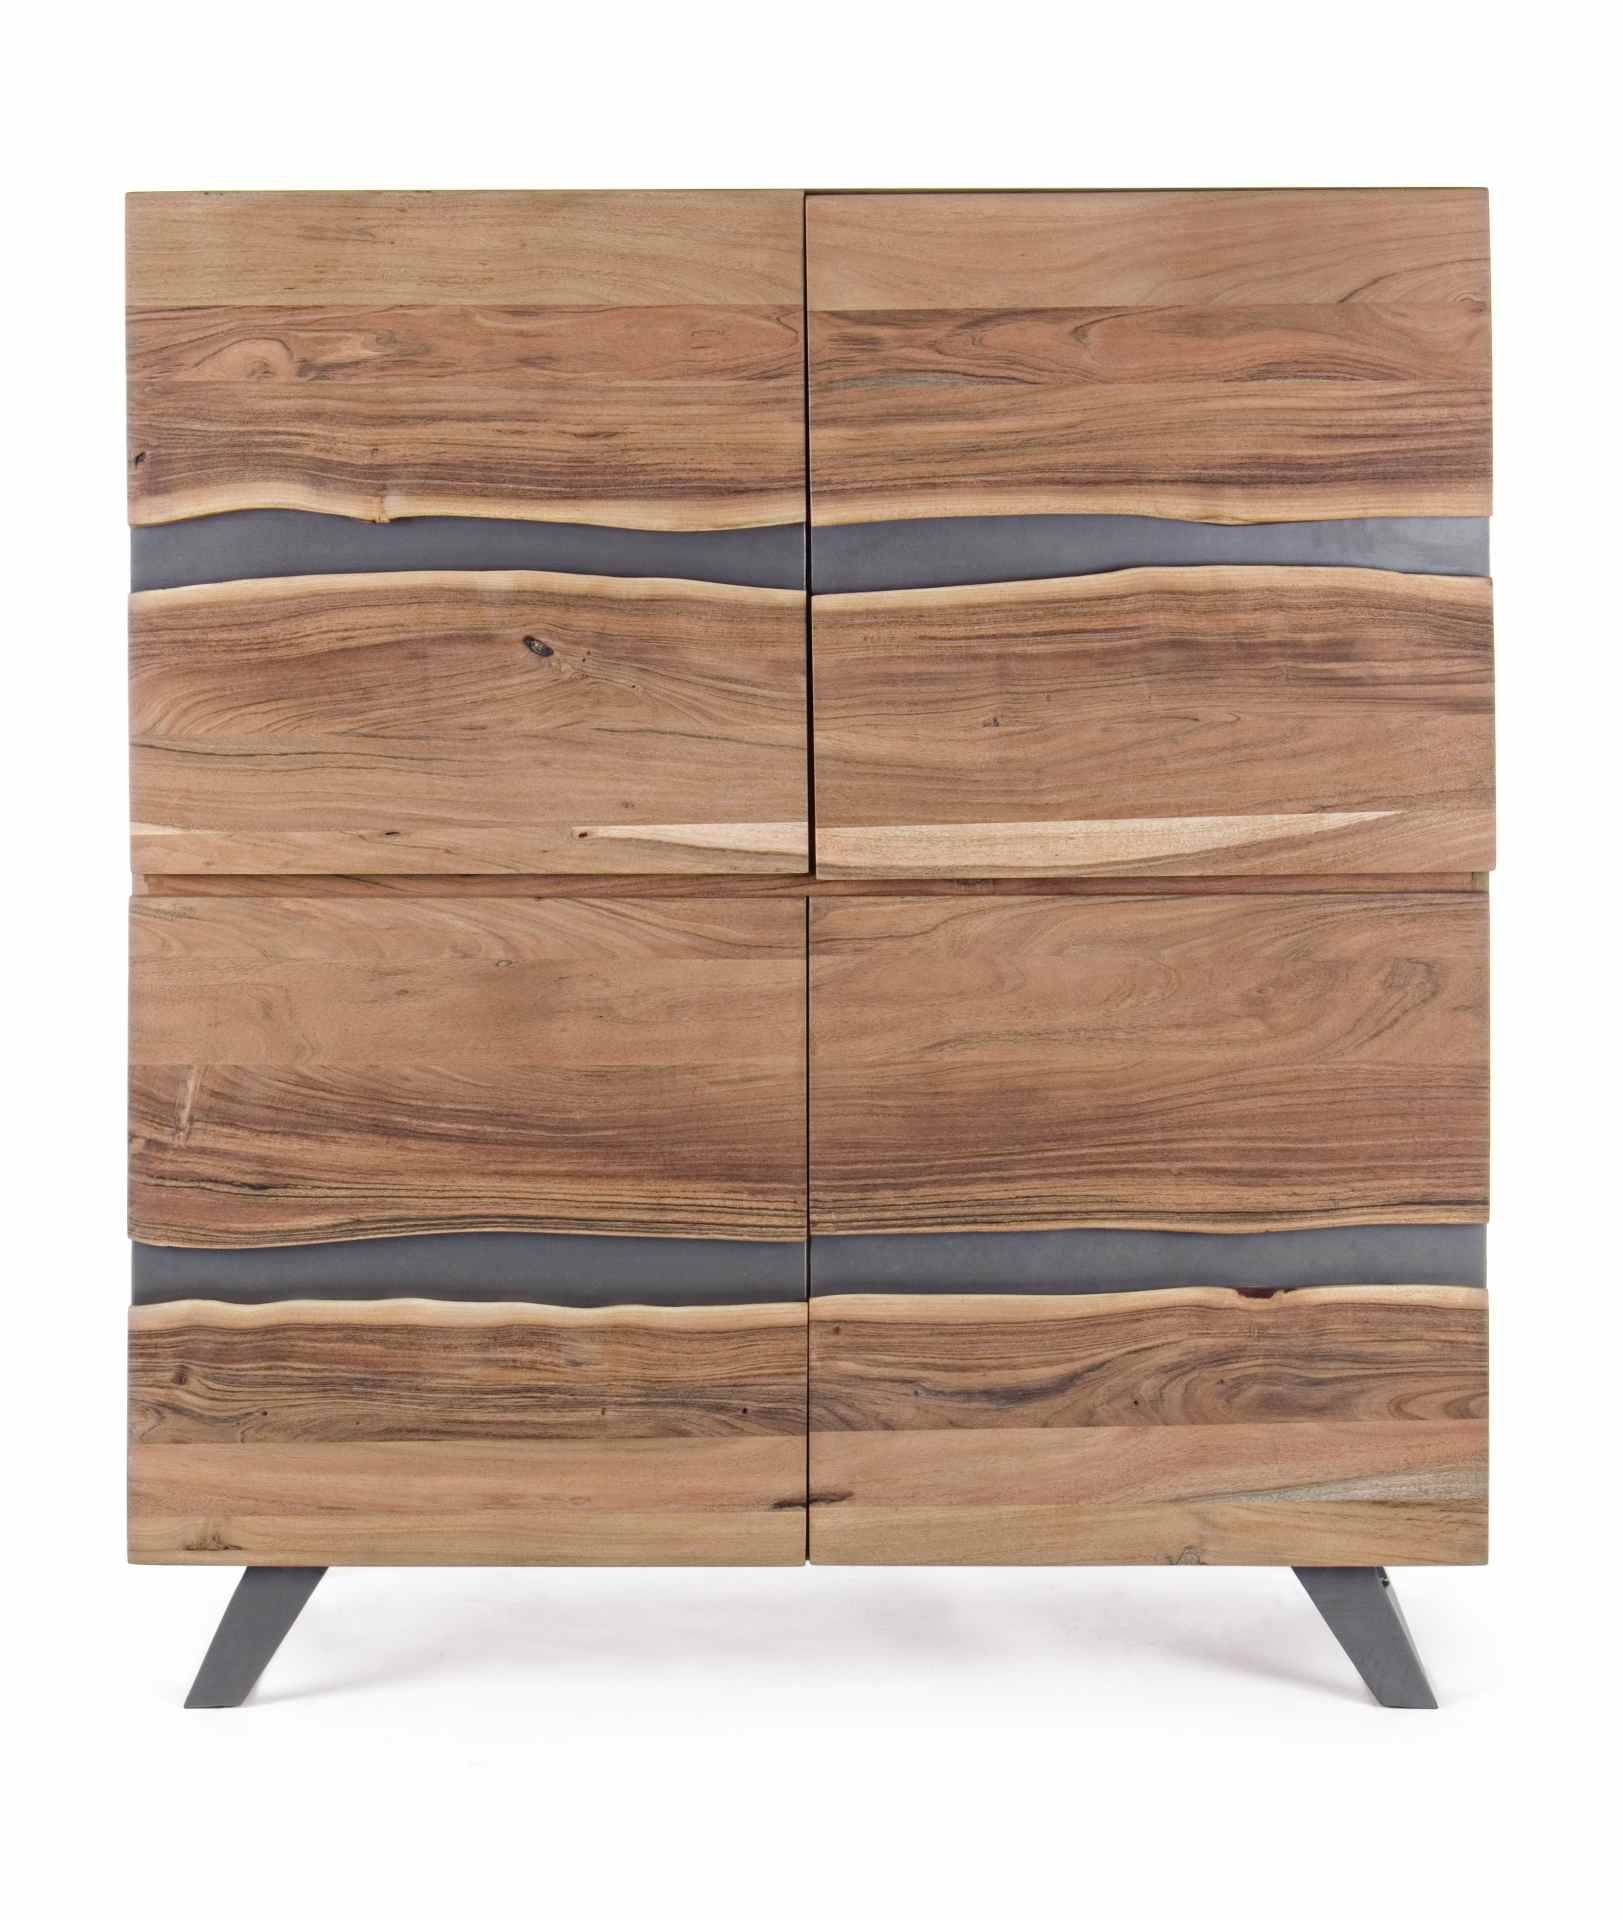 Das Sideboard Aron überzeugt mit seinem modernen Design. Gefertigt wurde es aus Akazien-Holz, welches einen natürlichen Farbton besitzt. Das Gestell ist aus Metall und hat eine schwarze Farbe. Das Sideboard verfügt über zwei Türen. Die Breite beträgt 118 